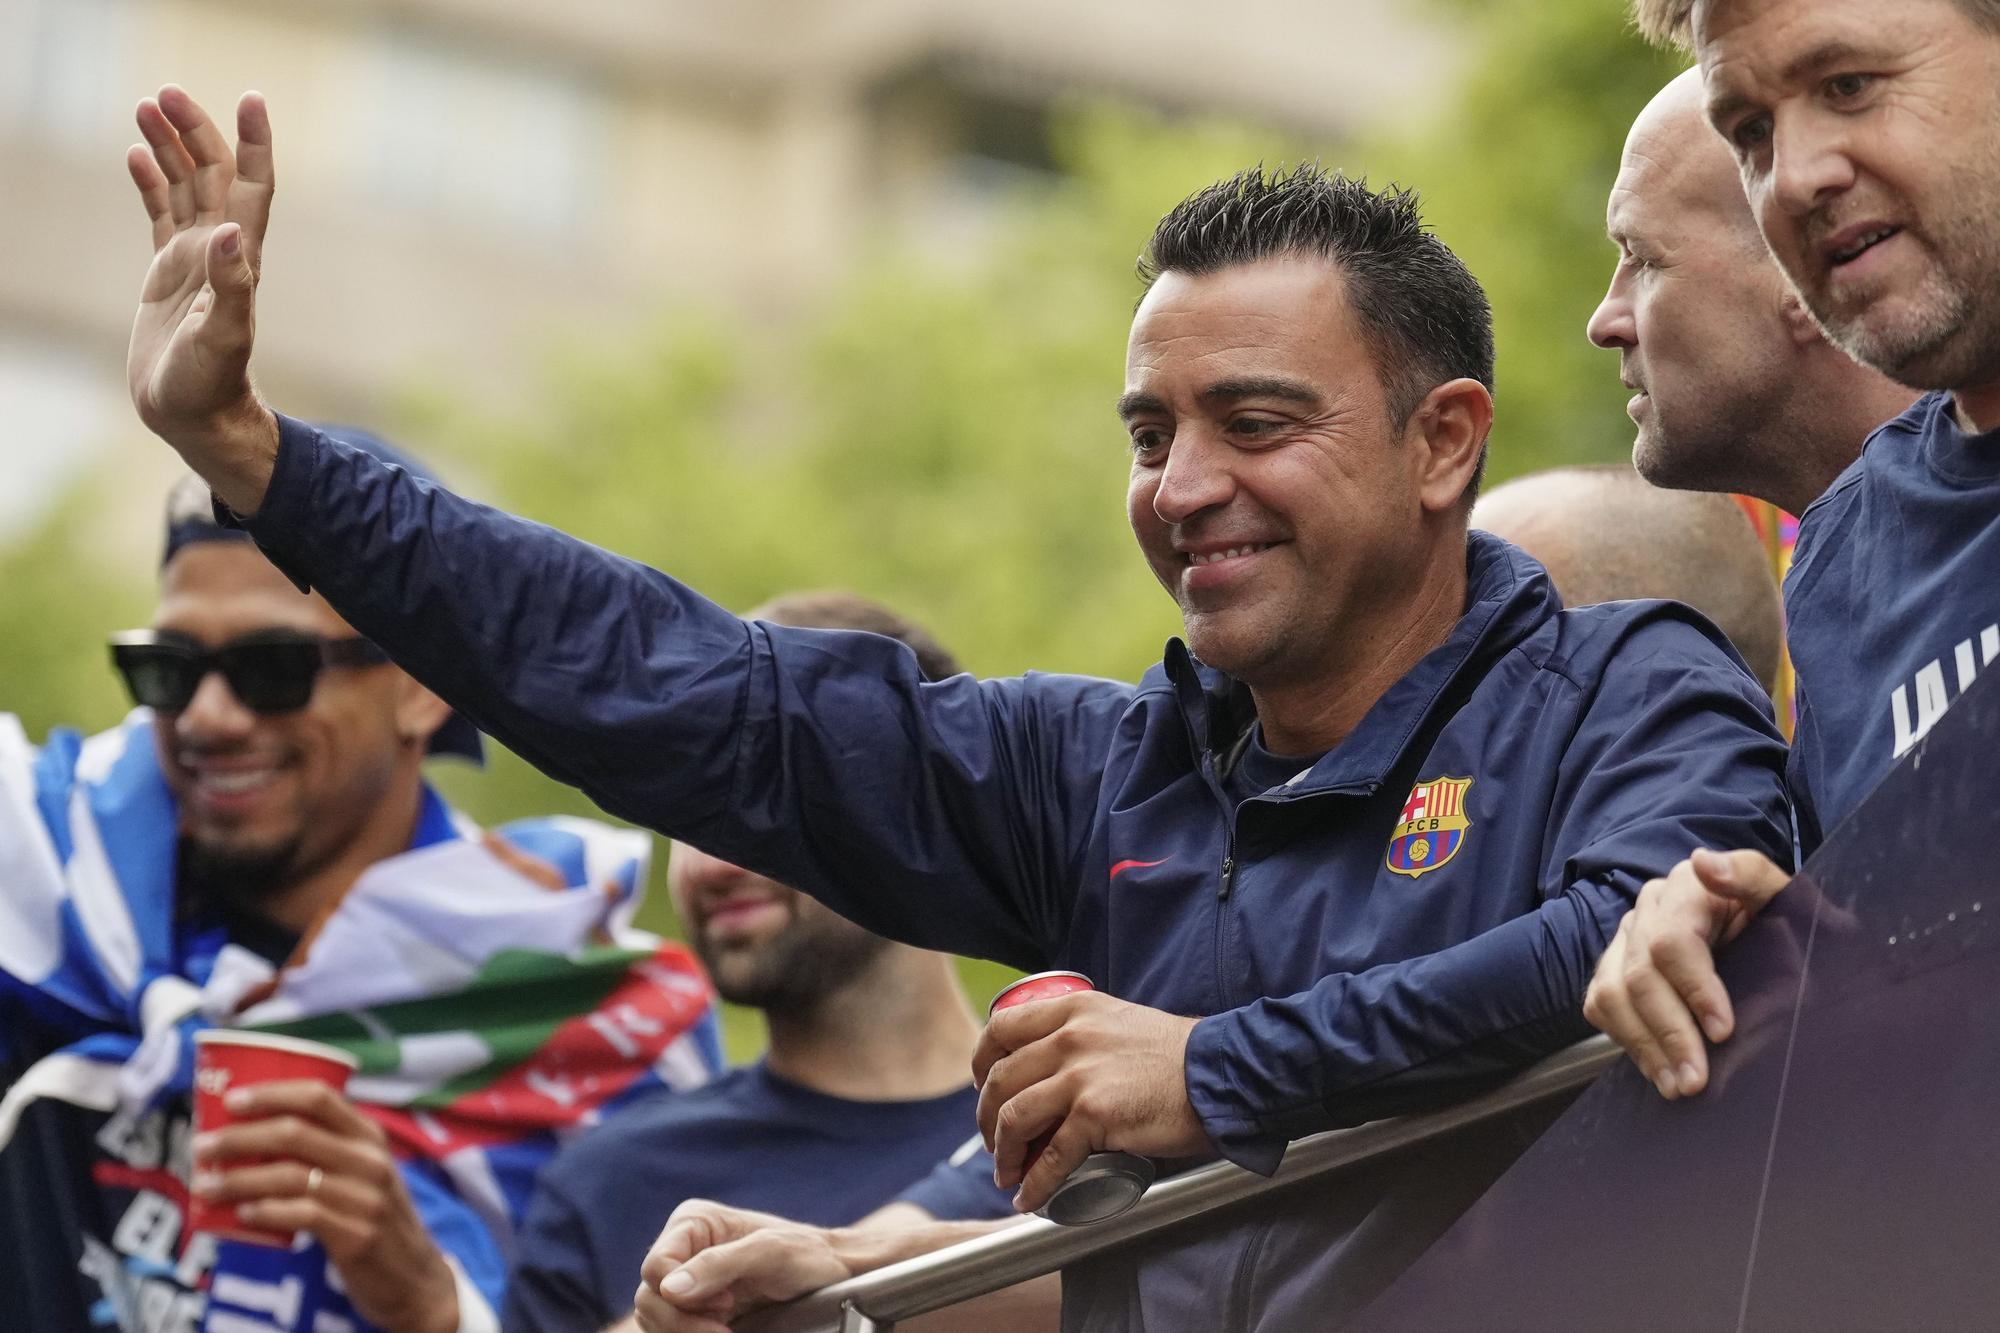 Les millors imatges de la rua de campions i campiones del Barça